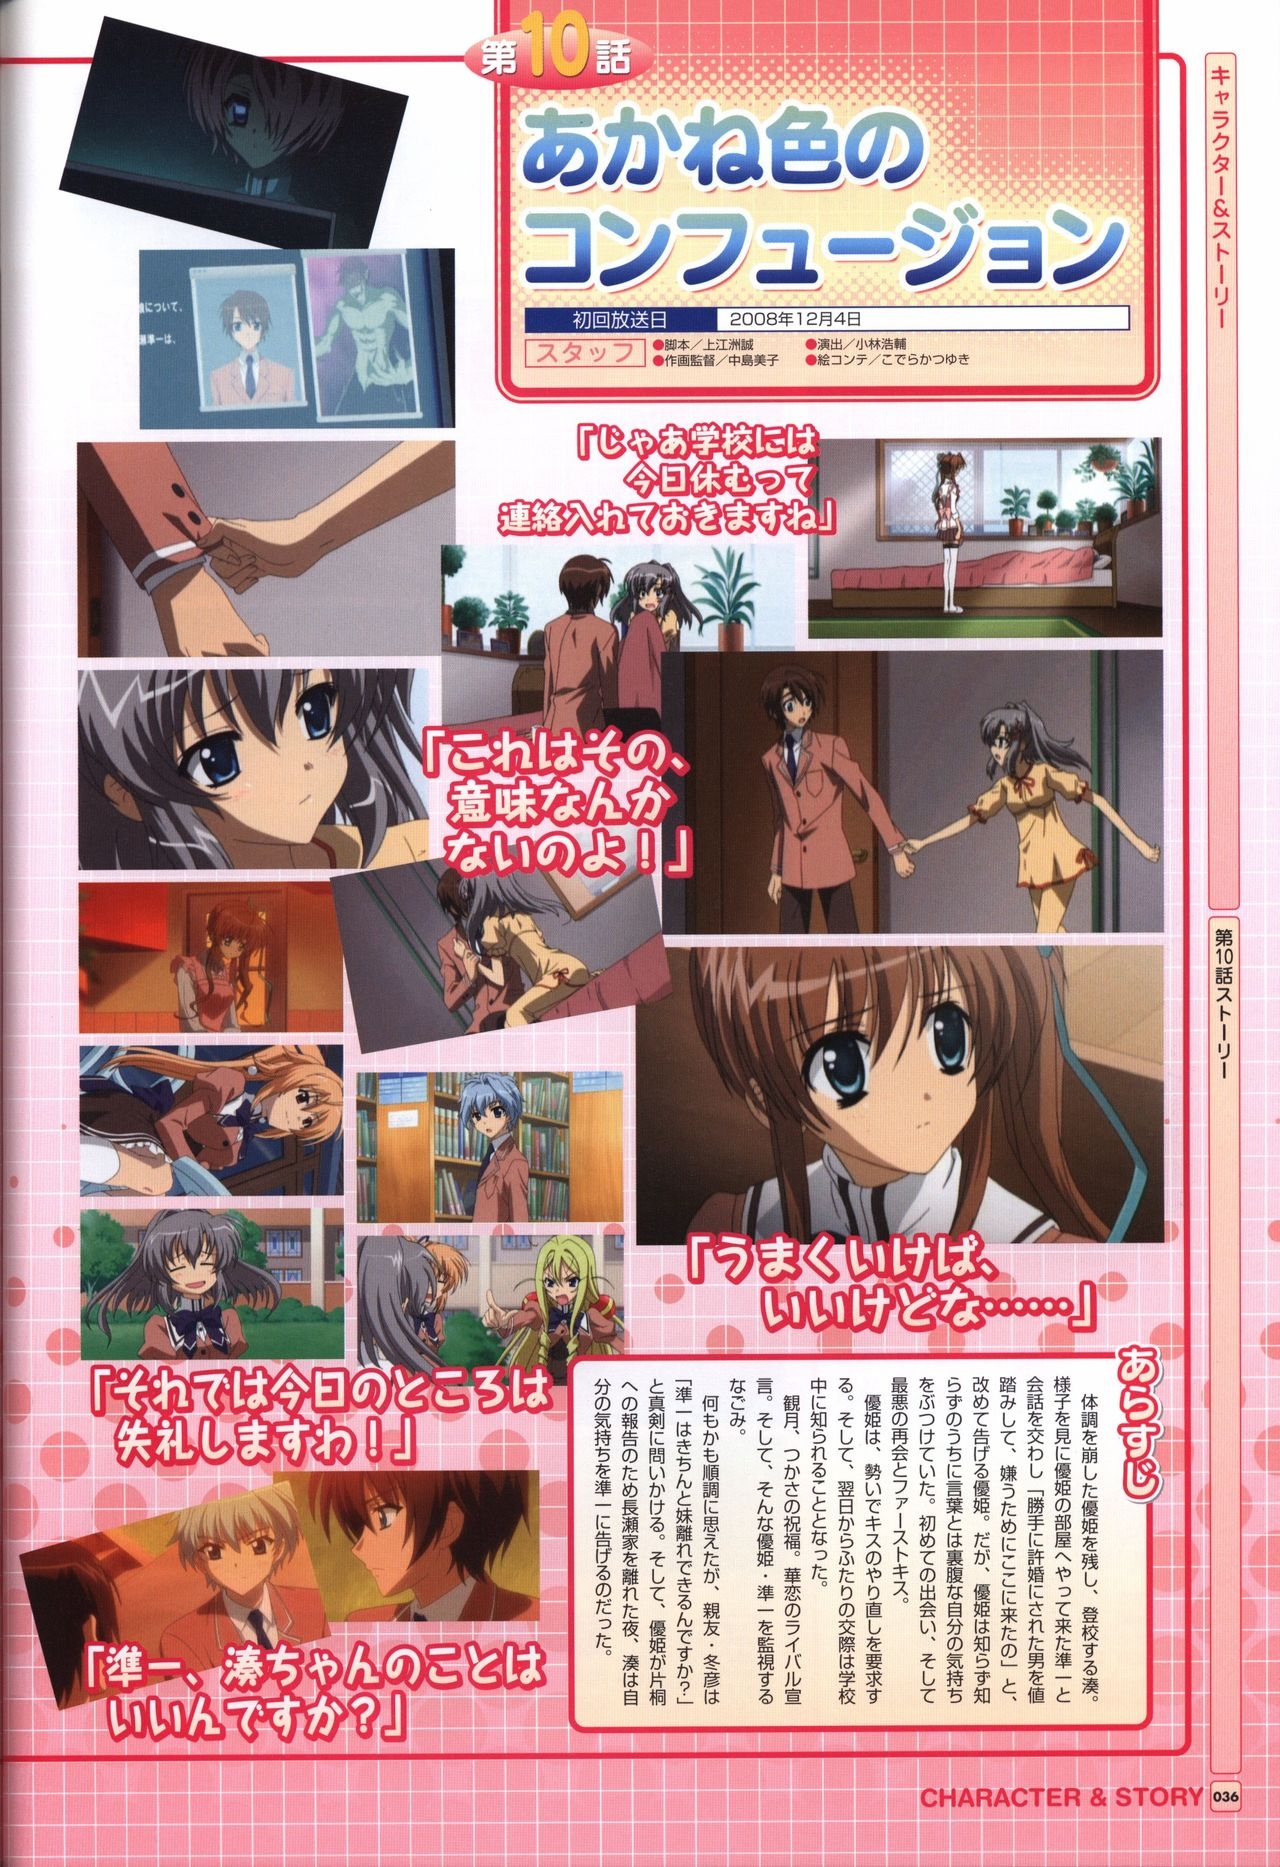 TV ANIME Akaneiro ni Somaru Saka Visual Guide Book 36